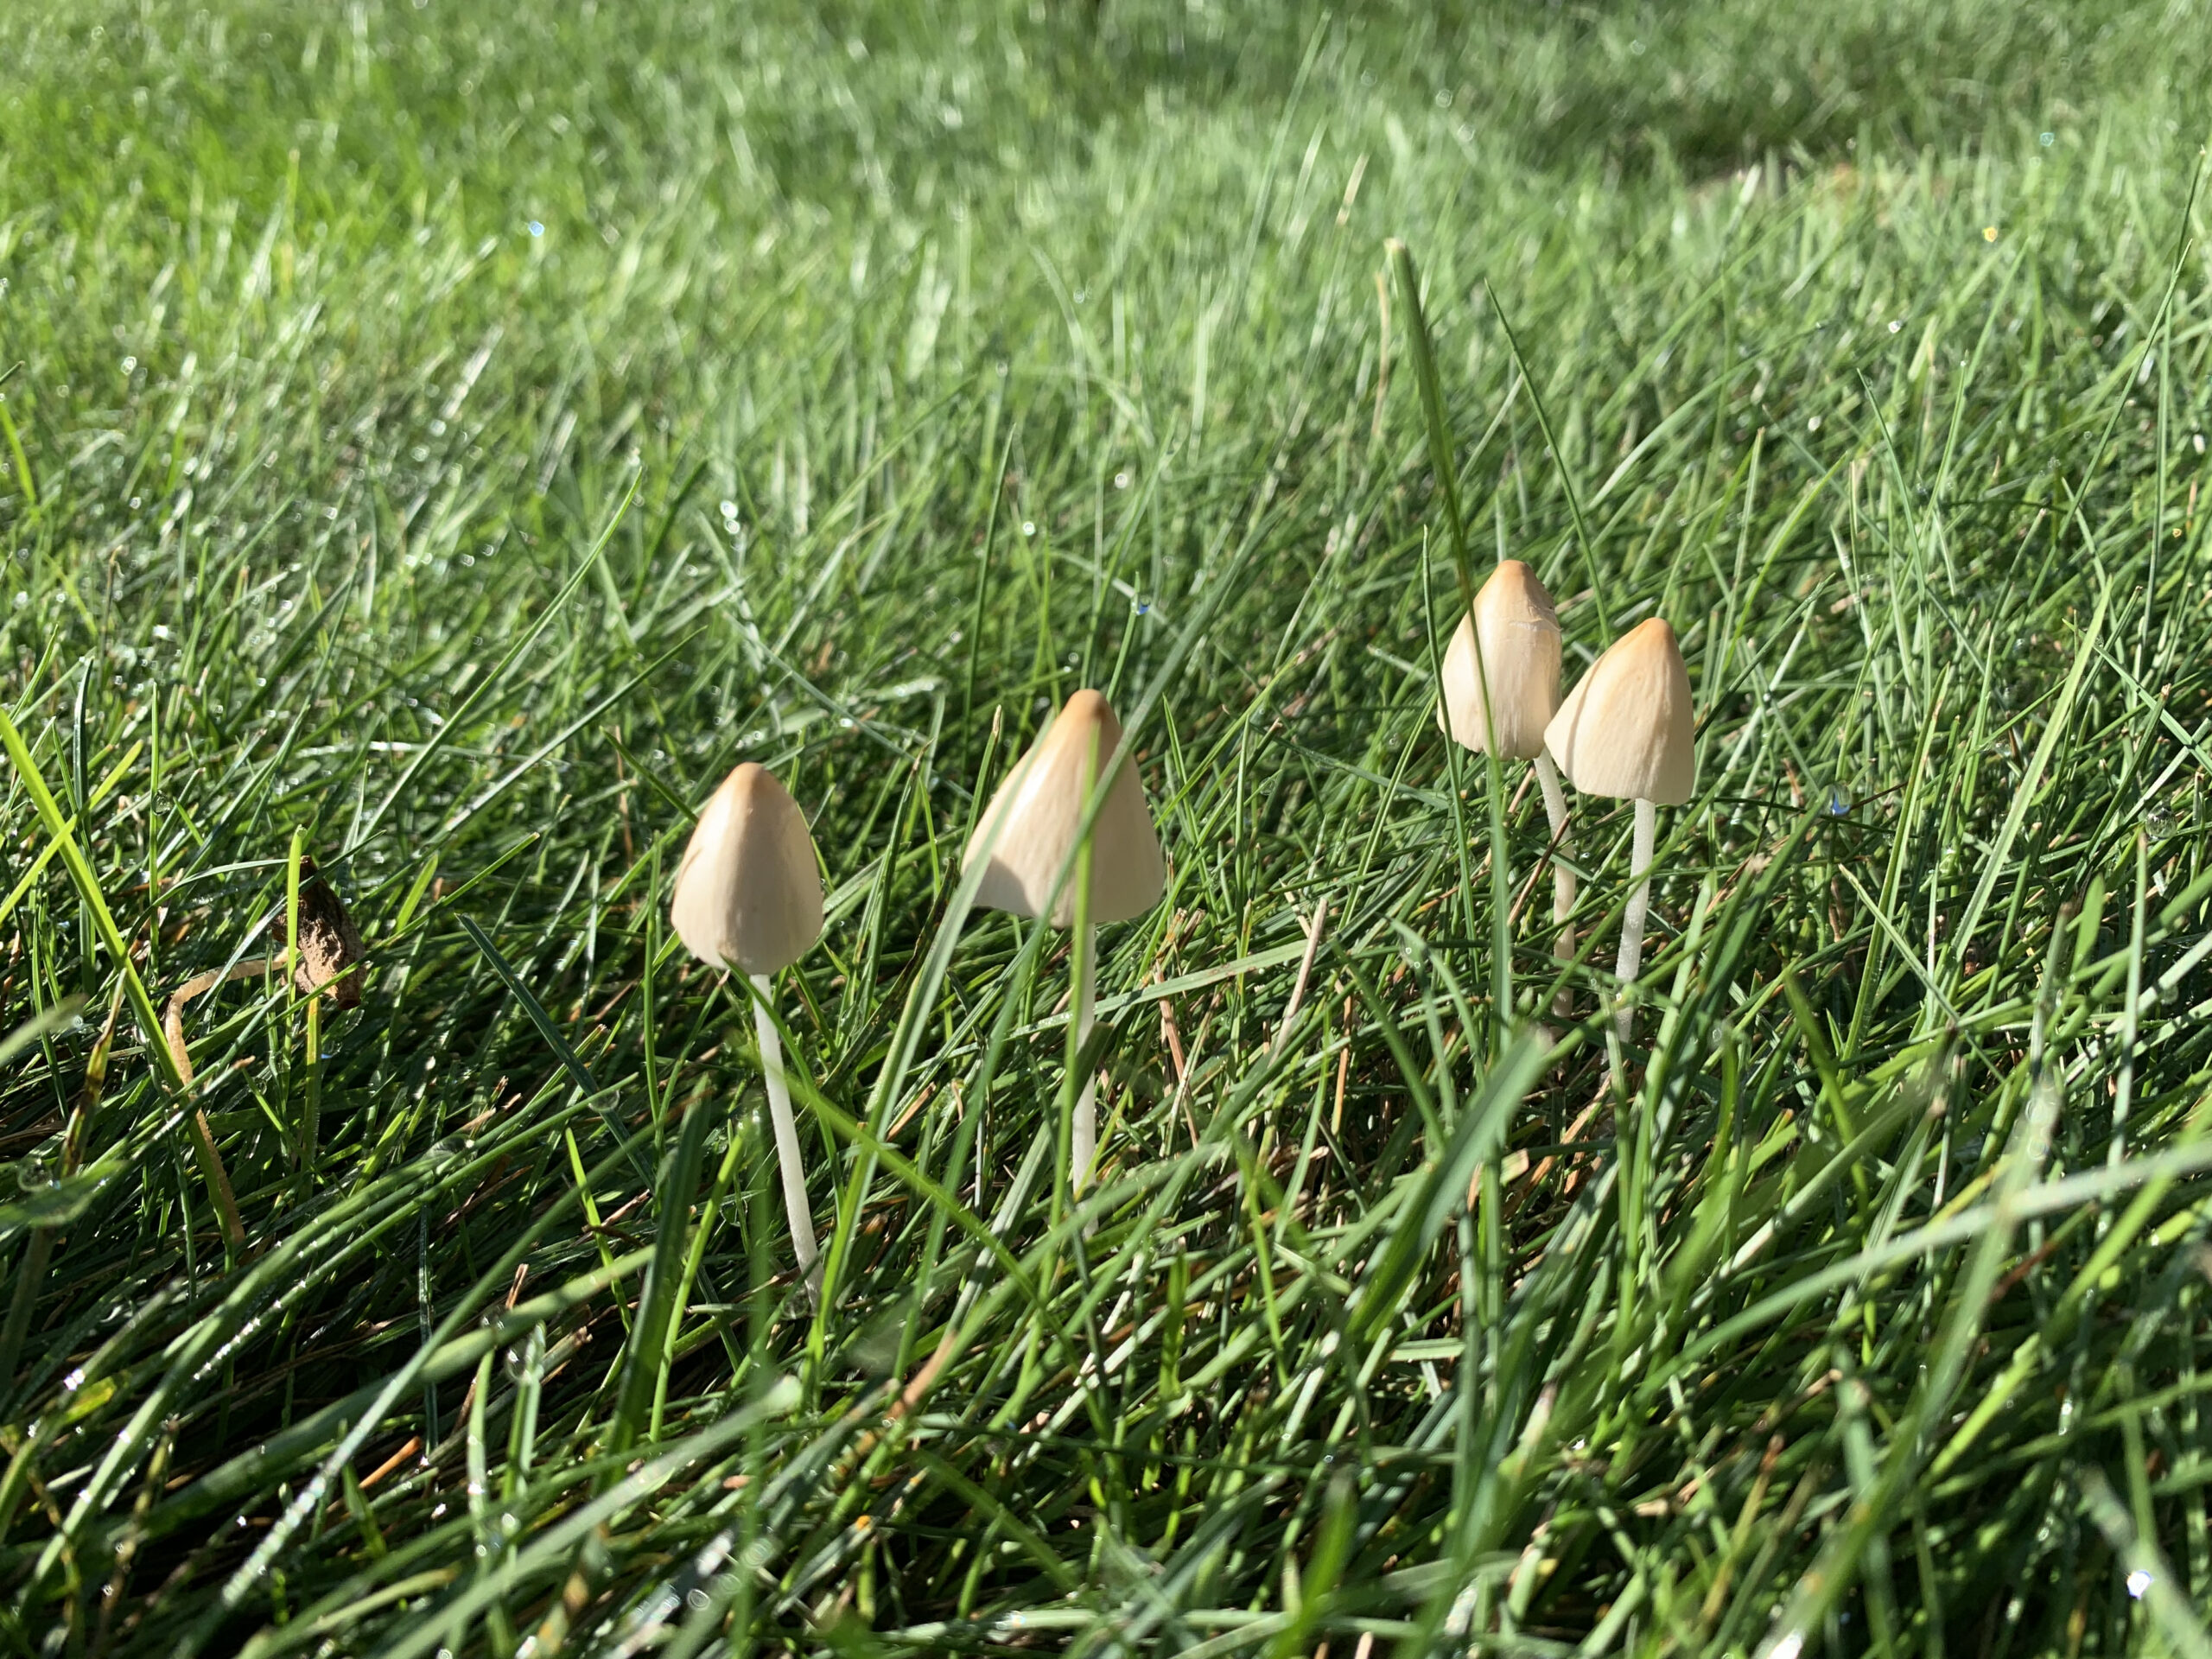 Magical, tiny mushrooms